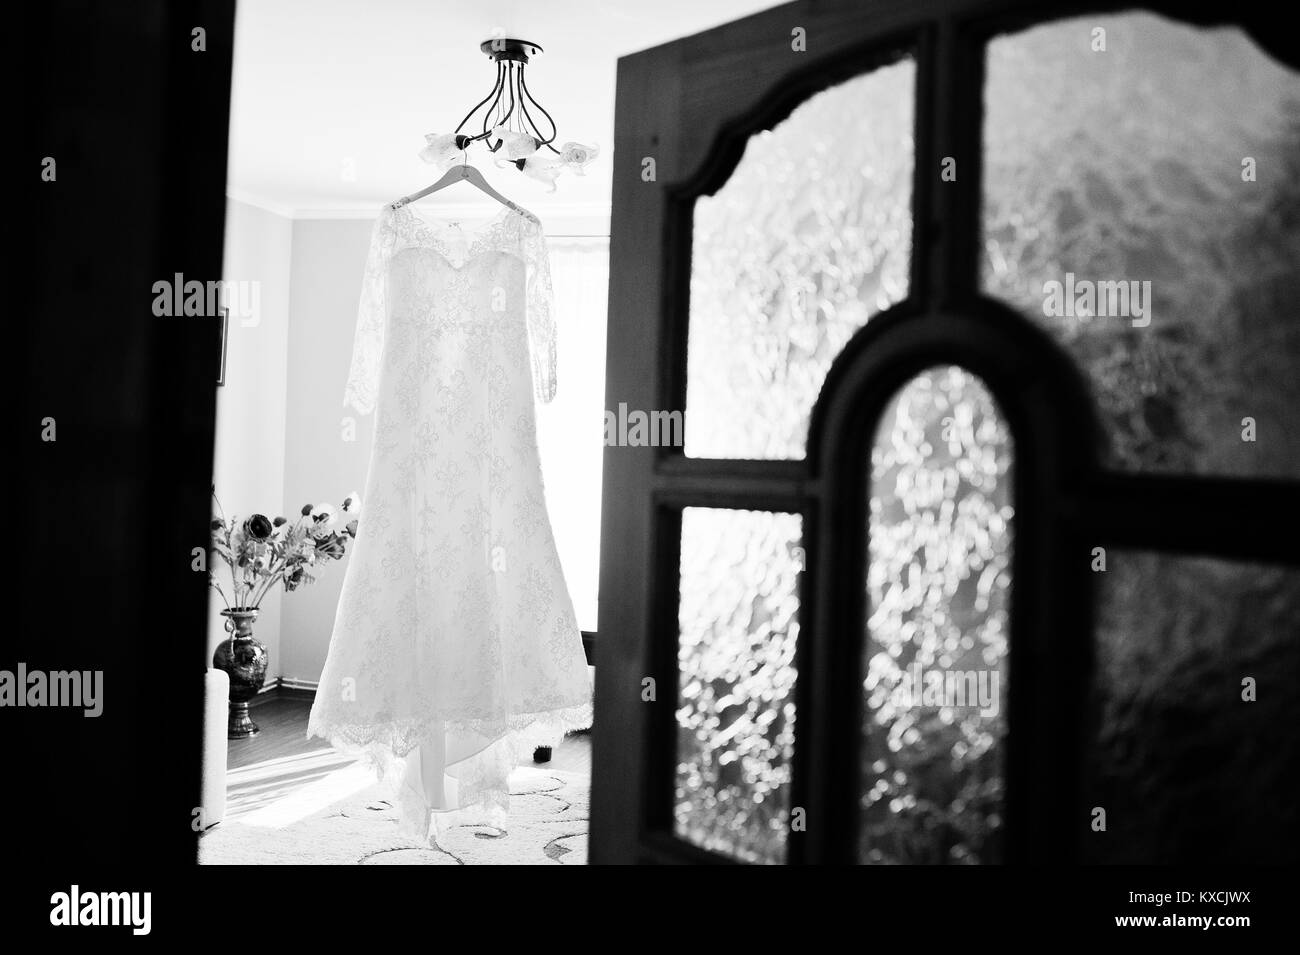 La robe de mariée mariée accroché sur le crochet dans la chambre. Photo en noir et blanc. Banque D'Images